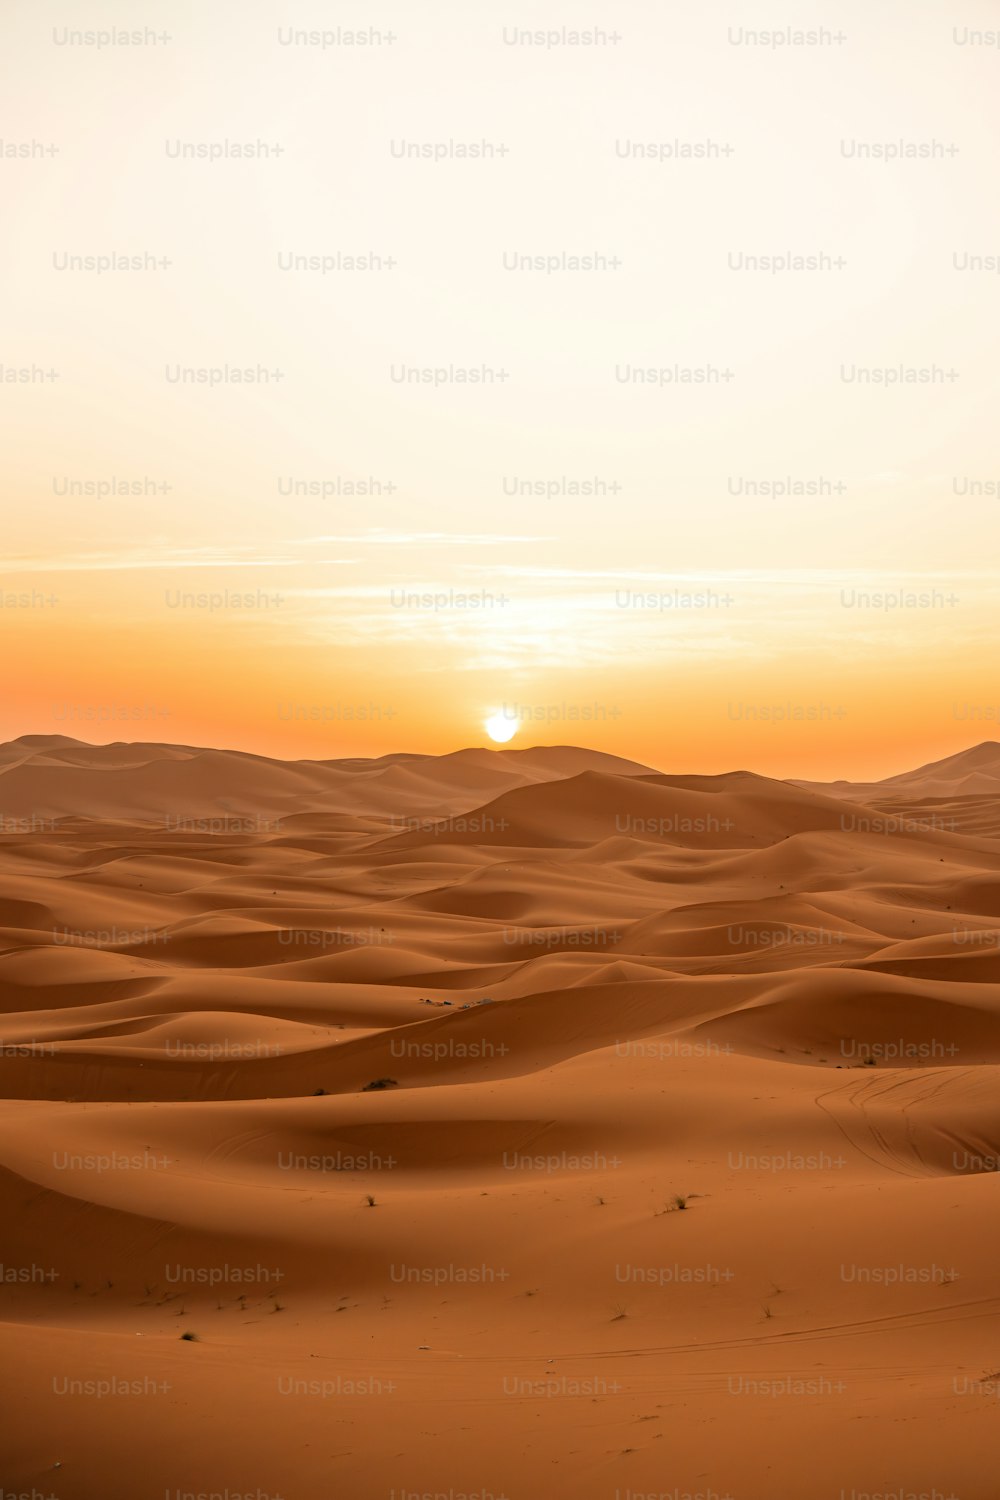 Die Sonne geht über den Sanddünen unter